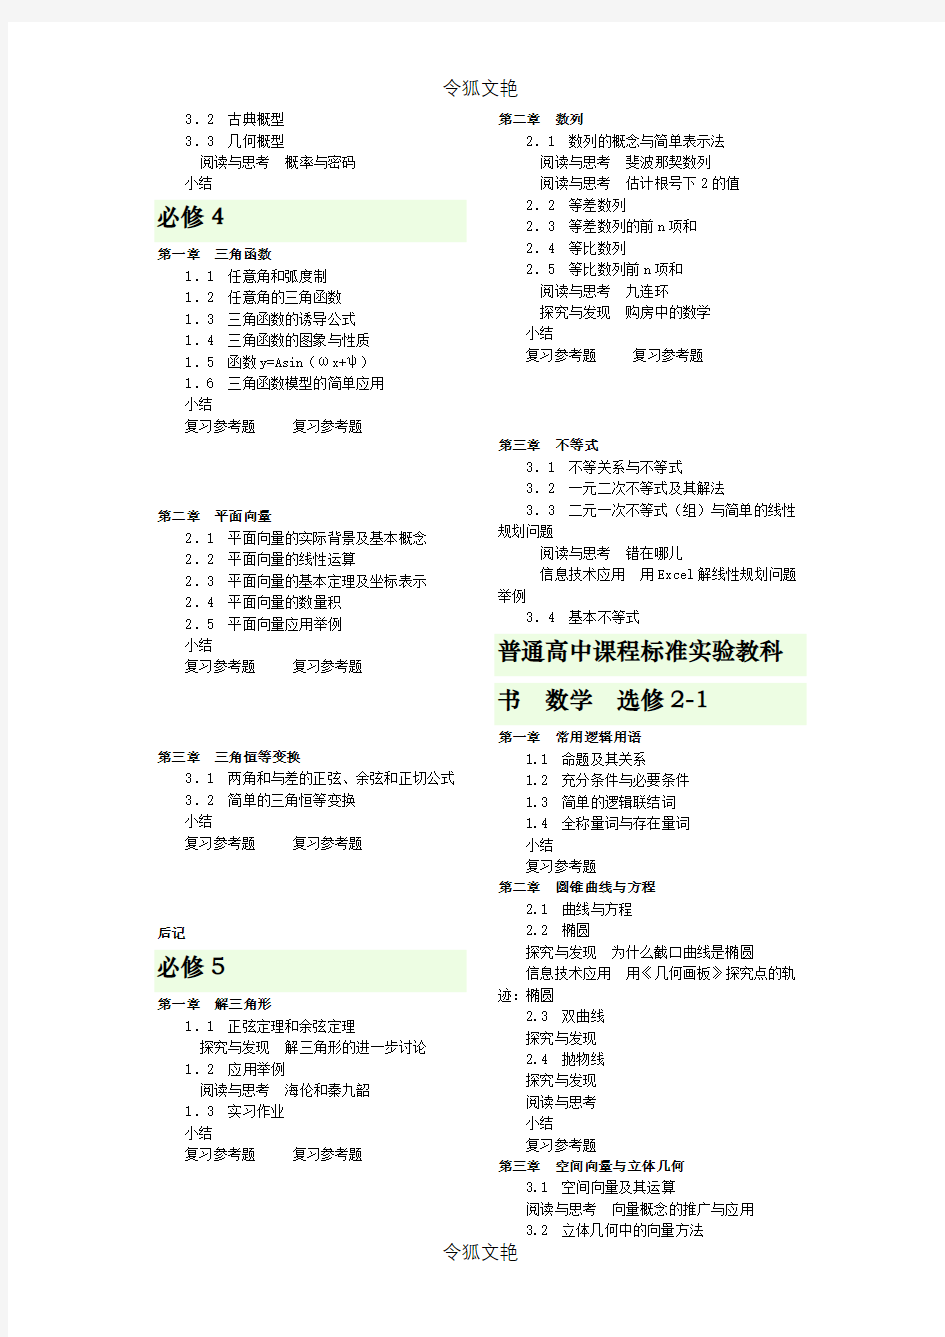 广东省高中数学课本及目录 (1)之令狐文艳创作